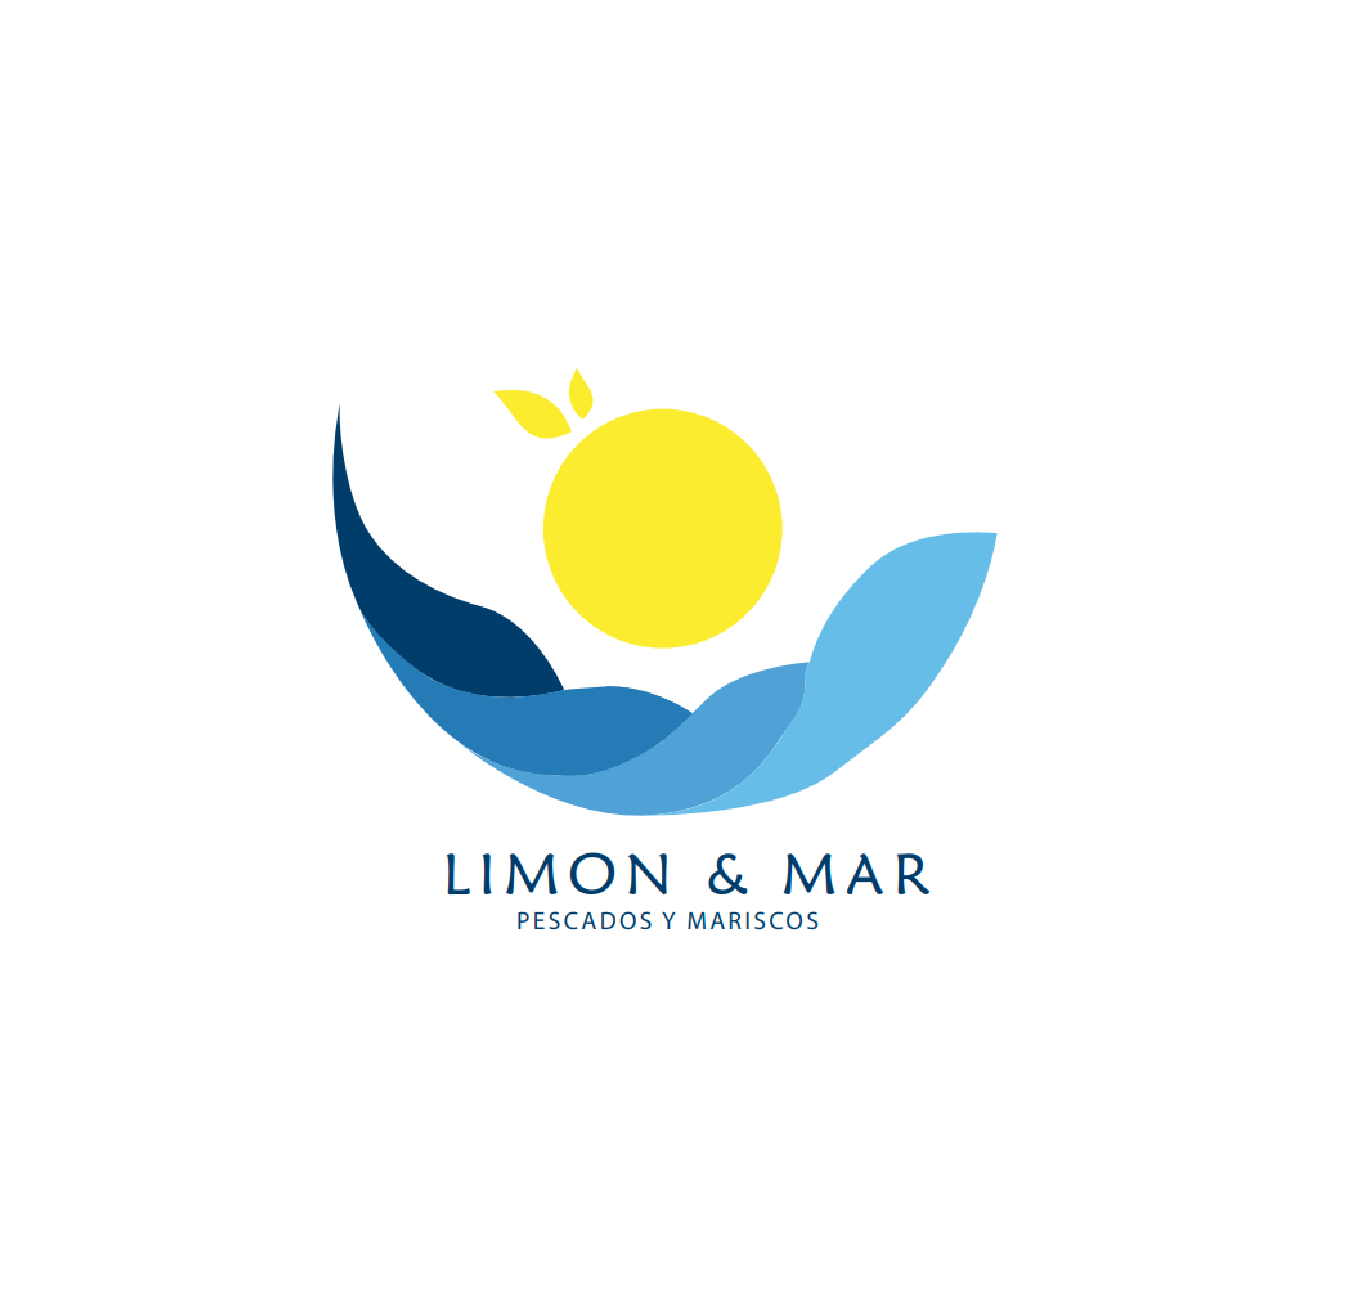 Diseño de Logotipo: Limon y Mar - Logos Peru - Diseño de Logos - Agencia de diseño de Logos - Nombres para Restaurantes Peruanos - logos de constructoras - logo de empresas constructoras - diseño de logotipos en lima